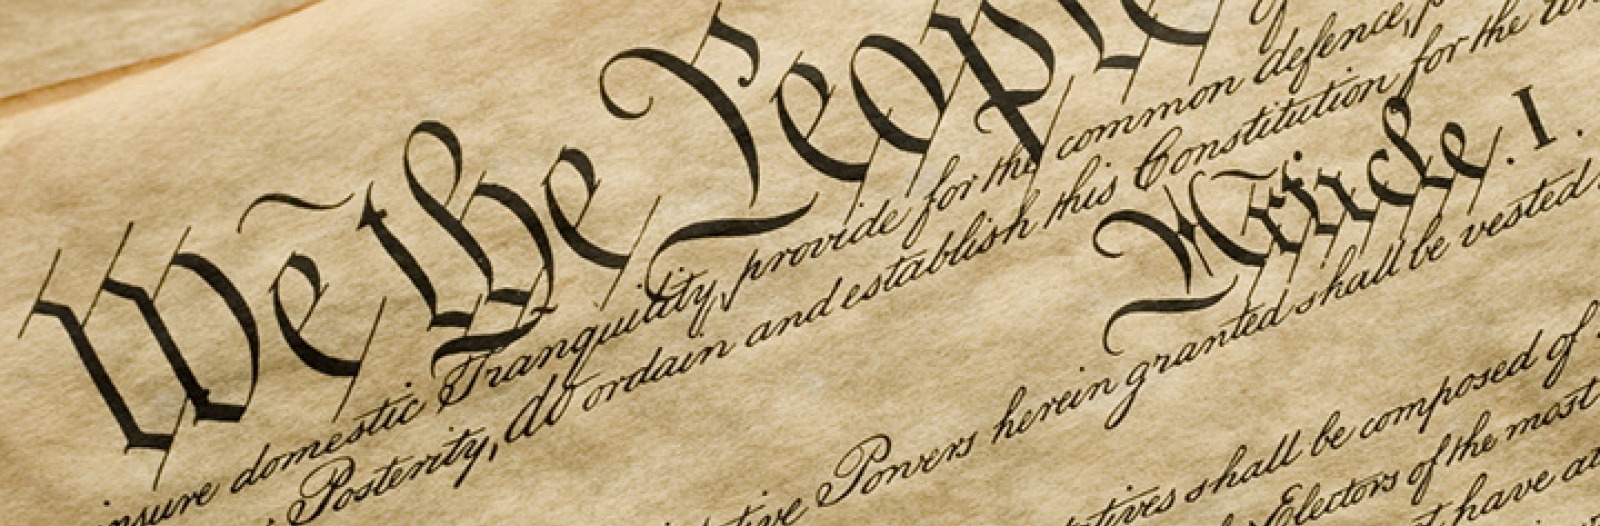 Beginning of the U.S. Constitution